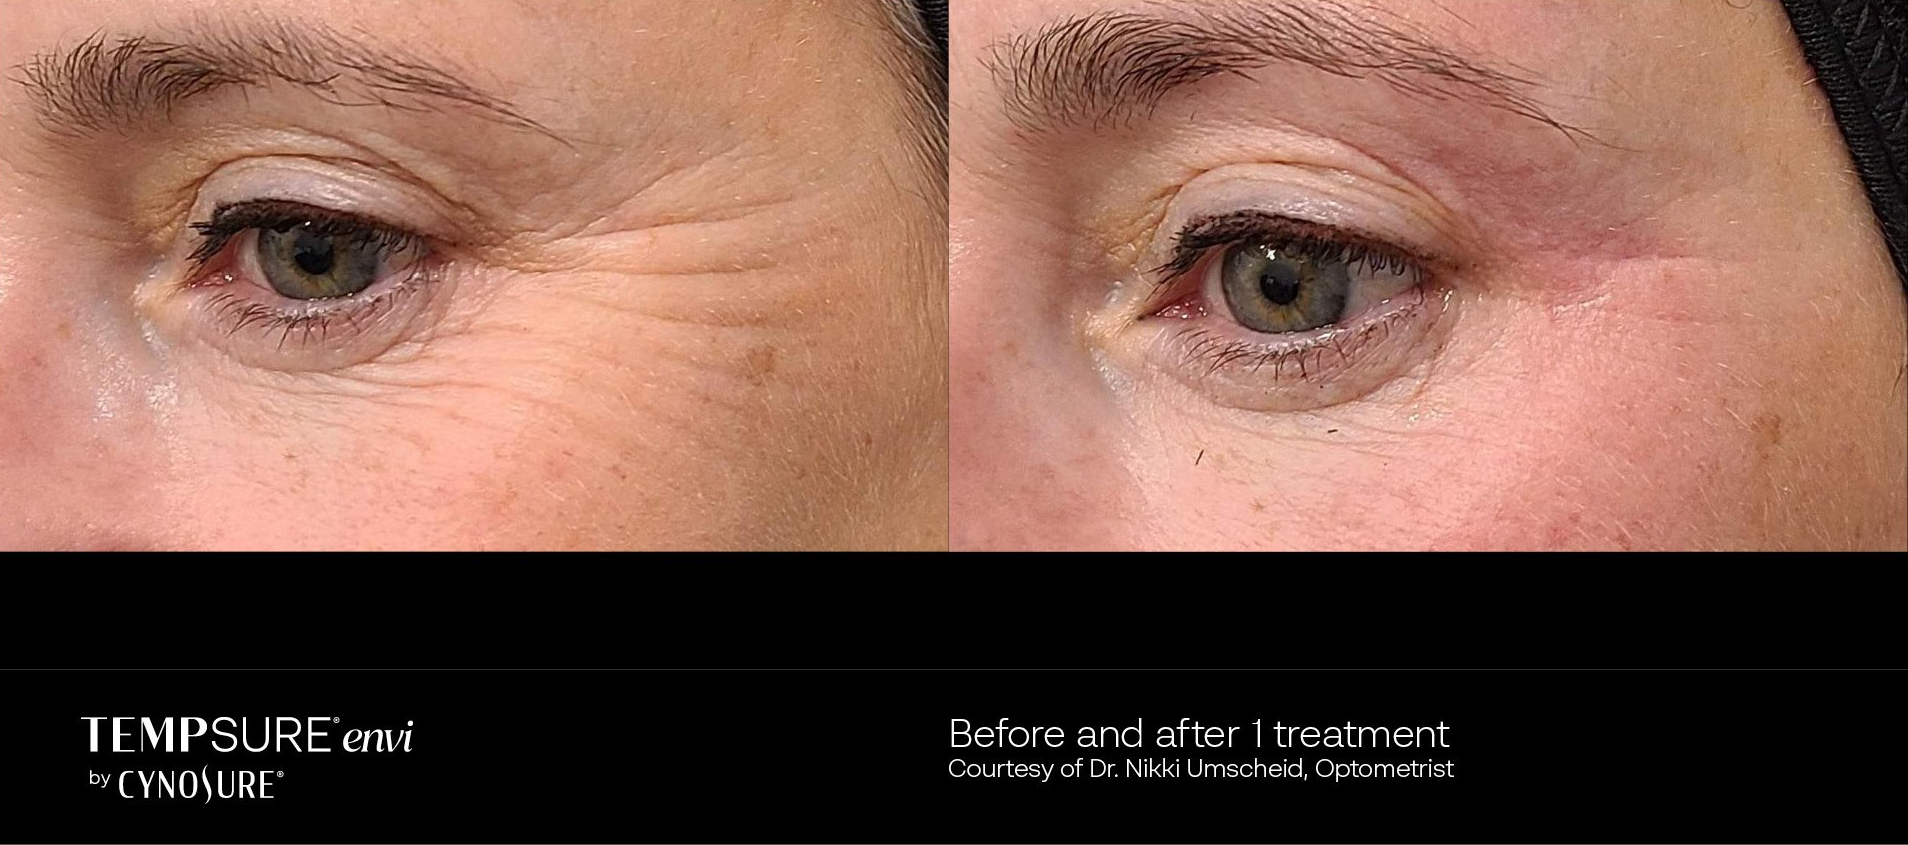 before and after tempsure envi treatment - patient photo